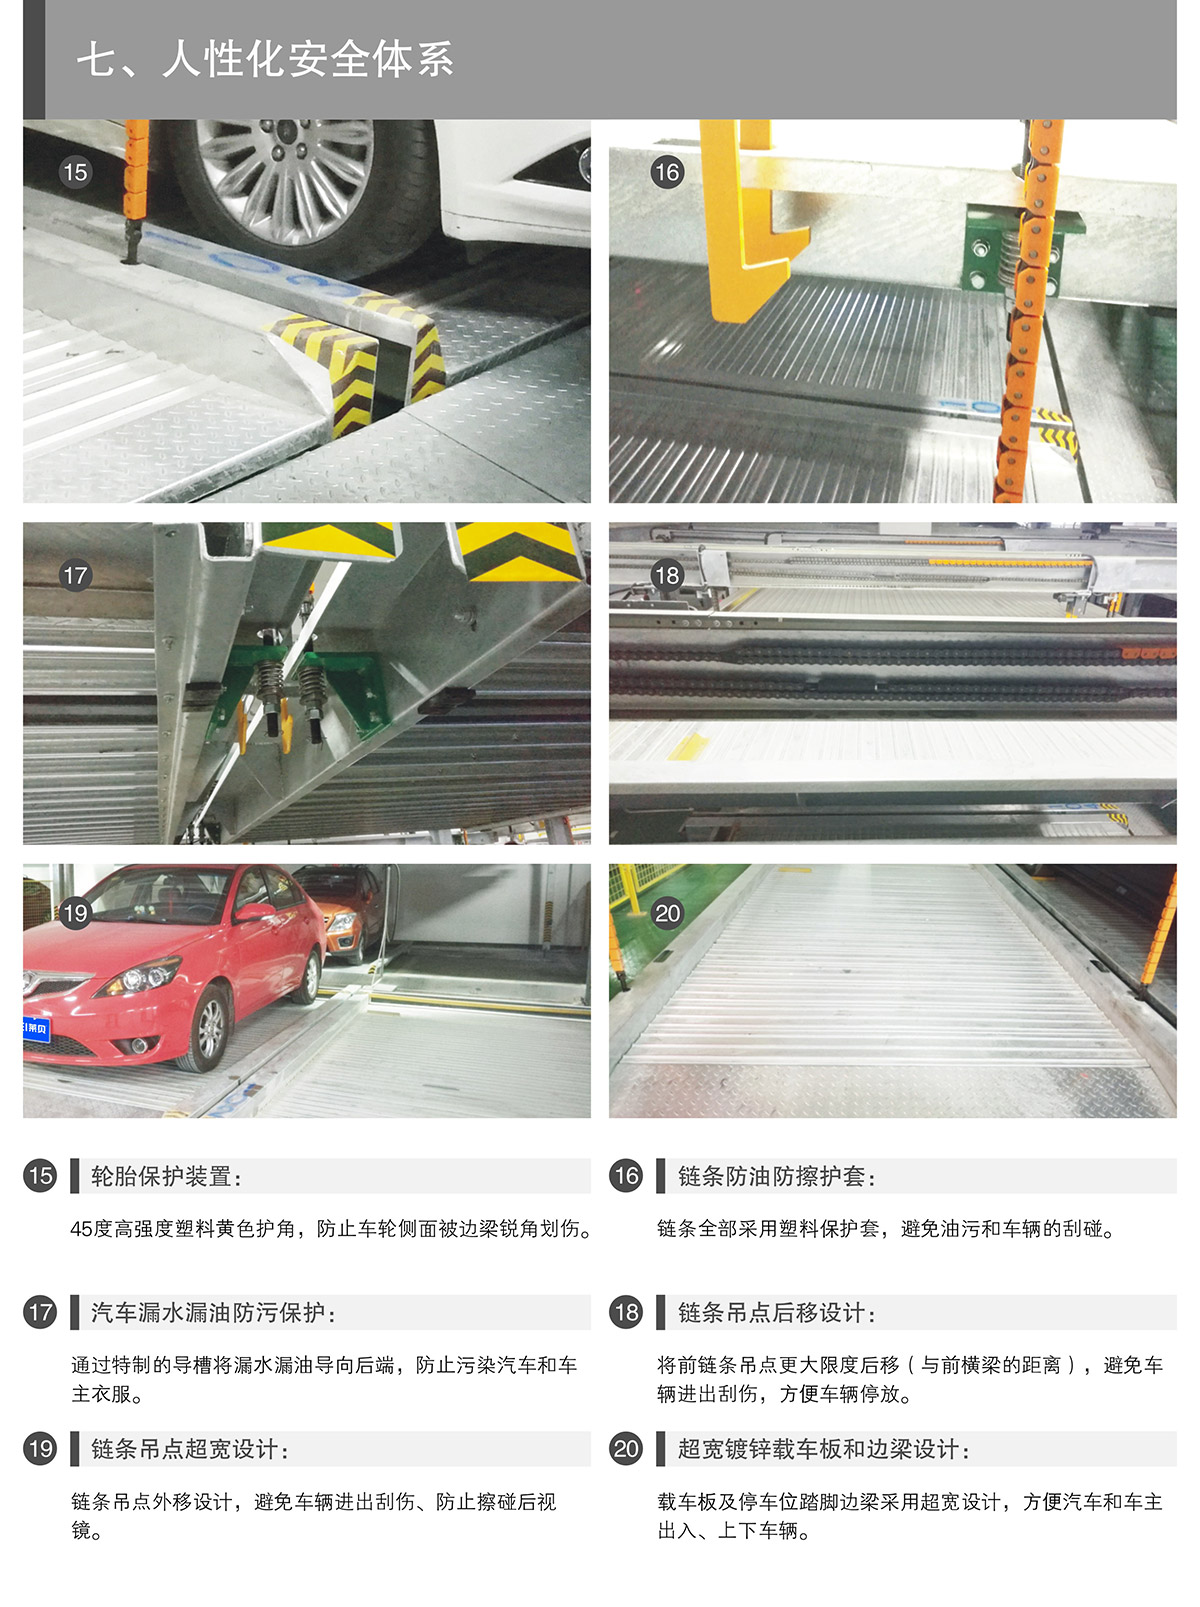 重庆PSH5-D2负二正三地坑五层升降横移类机械式立体停车设备人性化安全体系.jpg